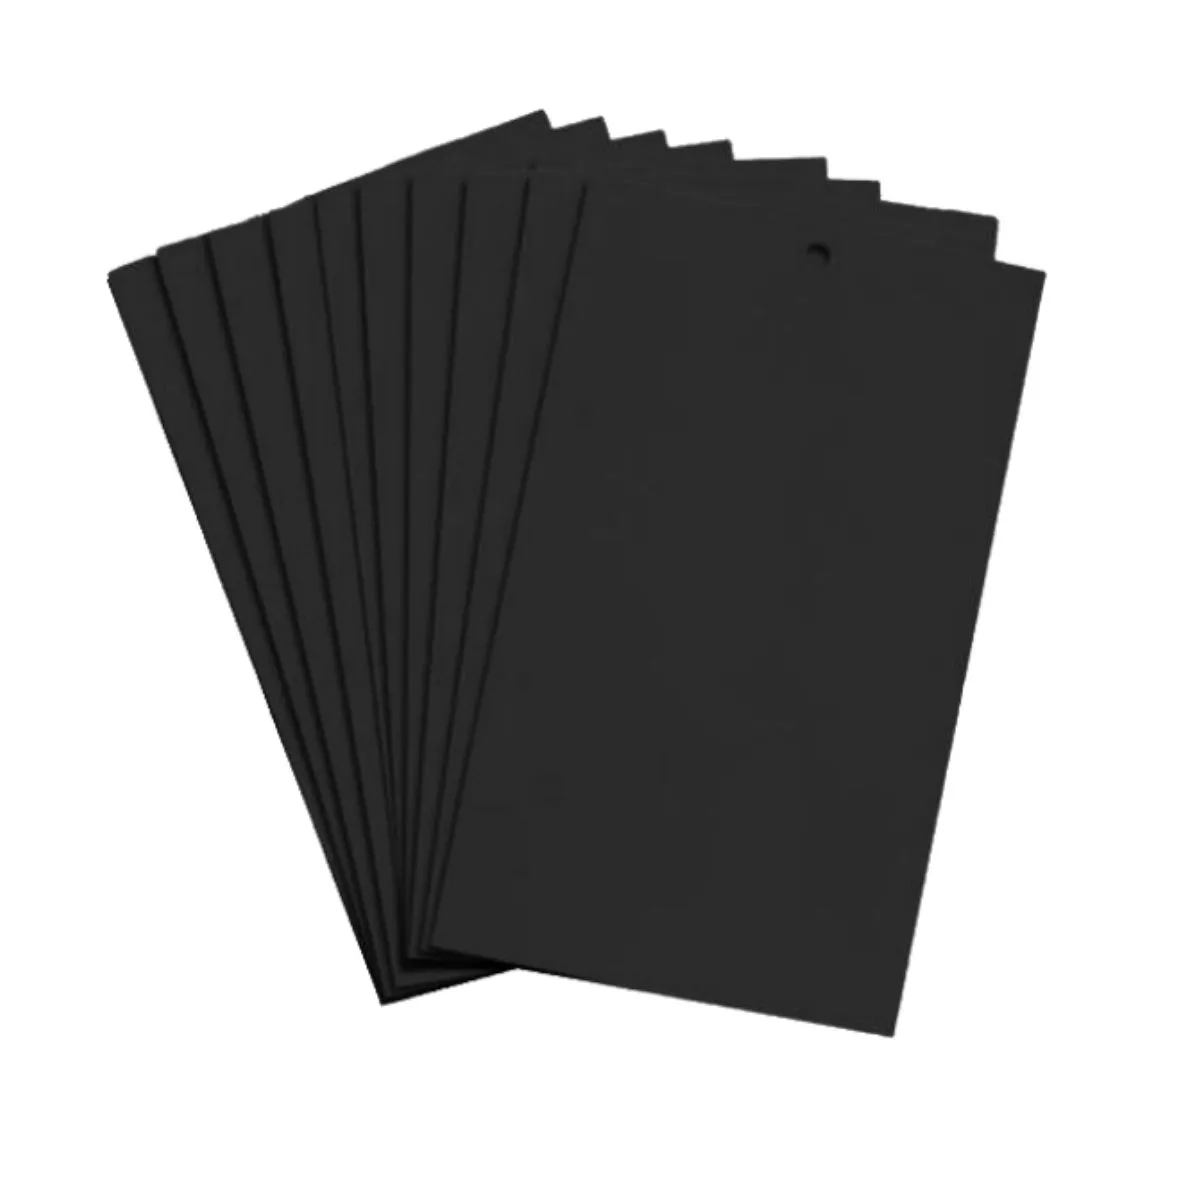 Capcana lipicioasa neagra pentru Tuta Absoluta, 25 x 40 cm, set 10 bucati 1